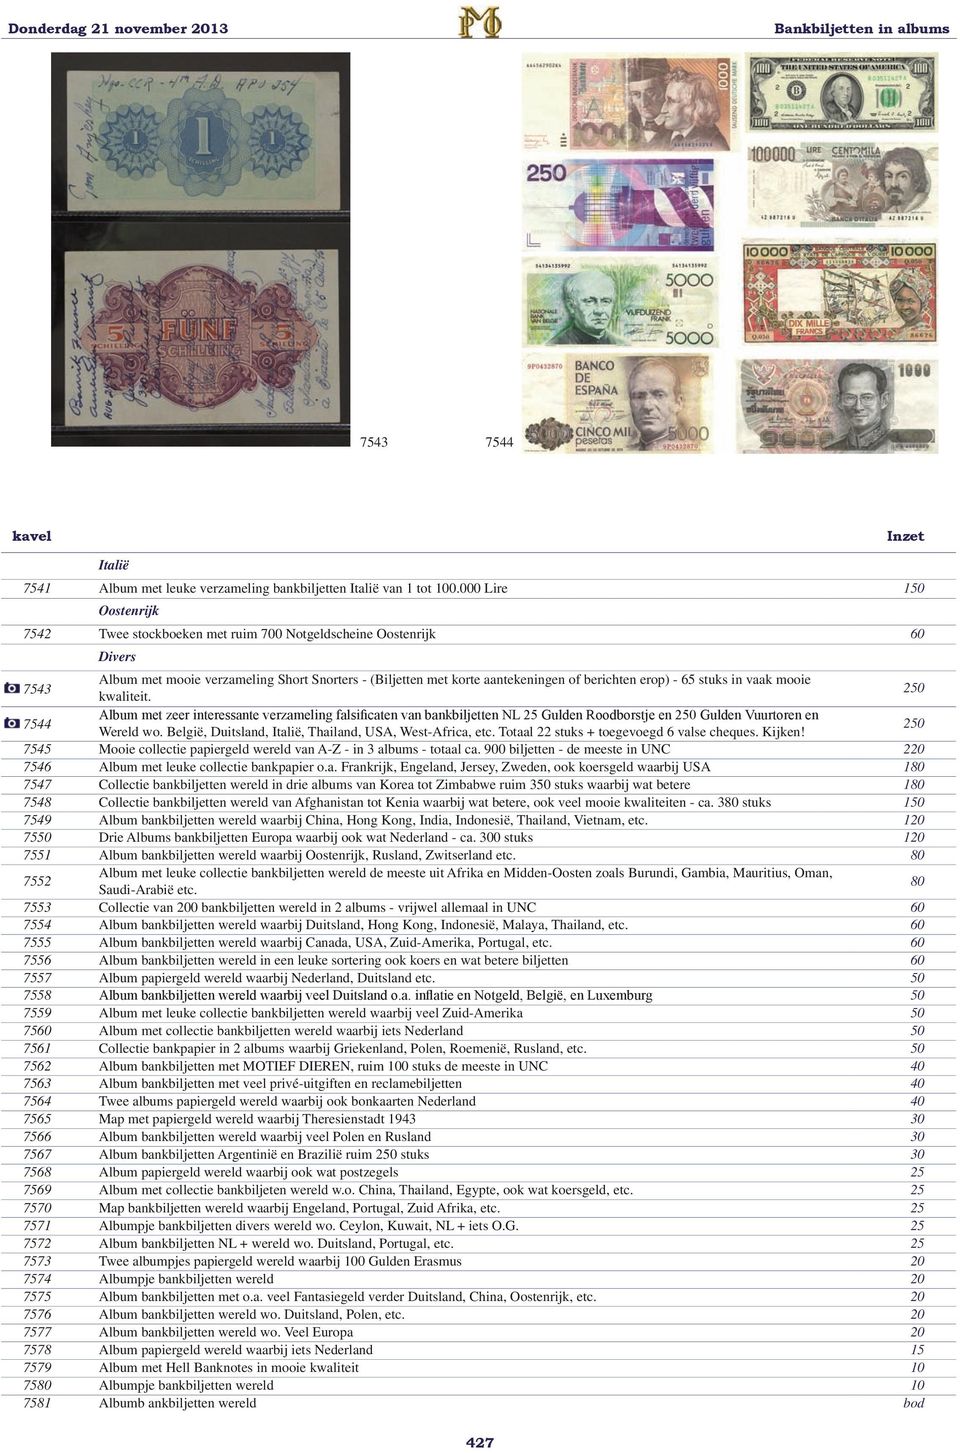 stuks in vaak mooie kwaliteit. 250 7544 Album met zeer interessante verzameling falsificaten van bankbiljetten NL 25 Gulden Roodborstje en 250 Gulden Vuurtoren en Wereld wo.